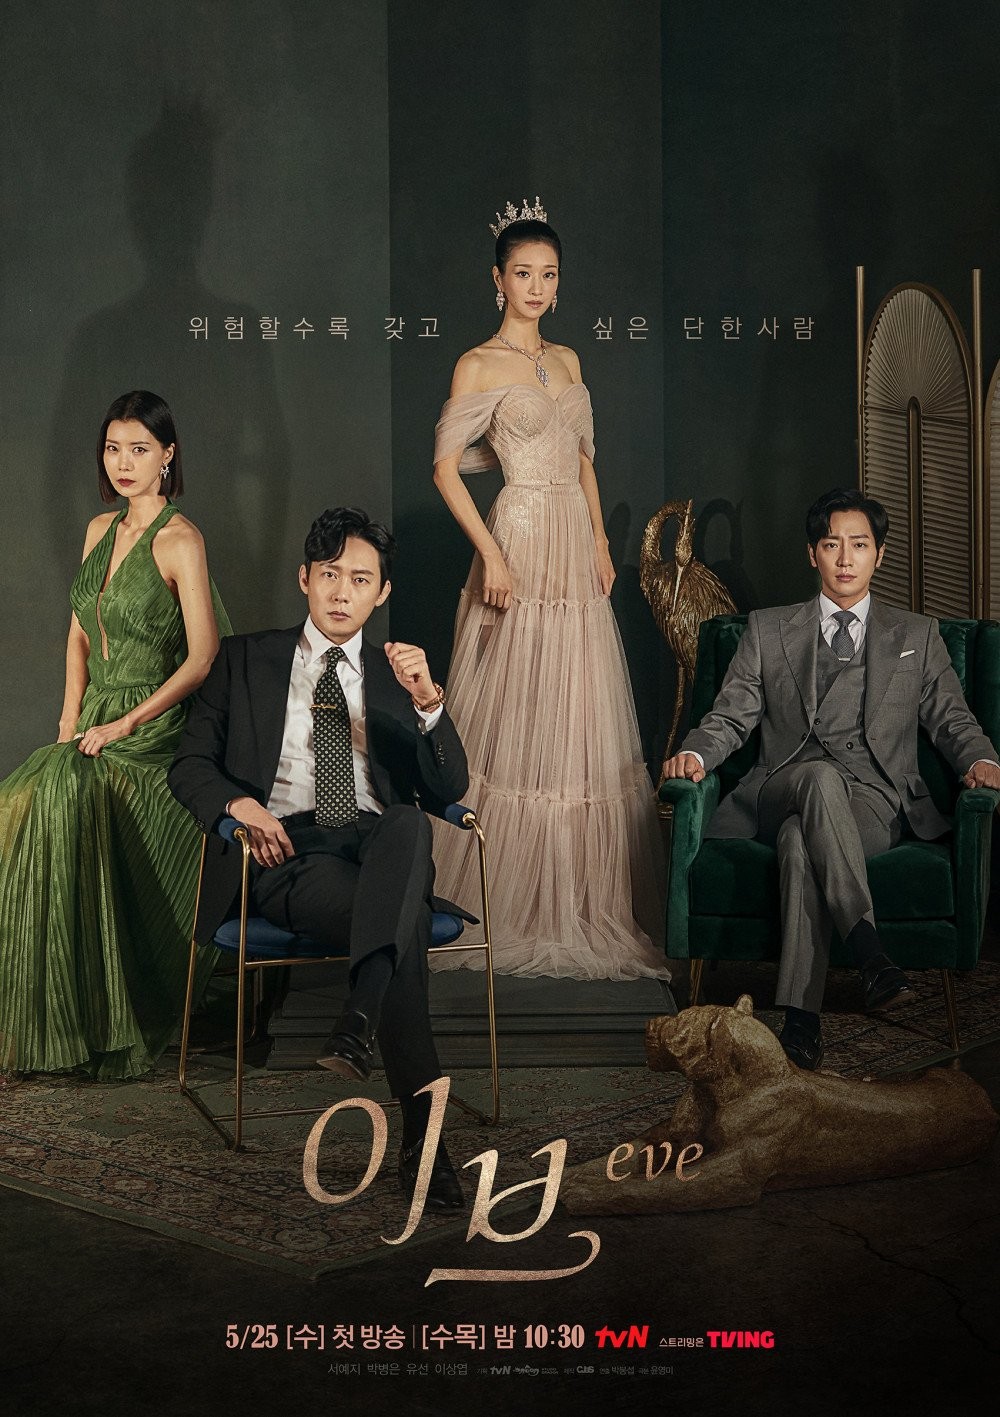 ‘Điên nữ’ Seo Ye Ji nổi bần bật trong poster chính của phim Eve